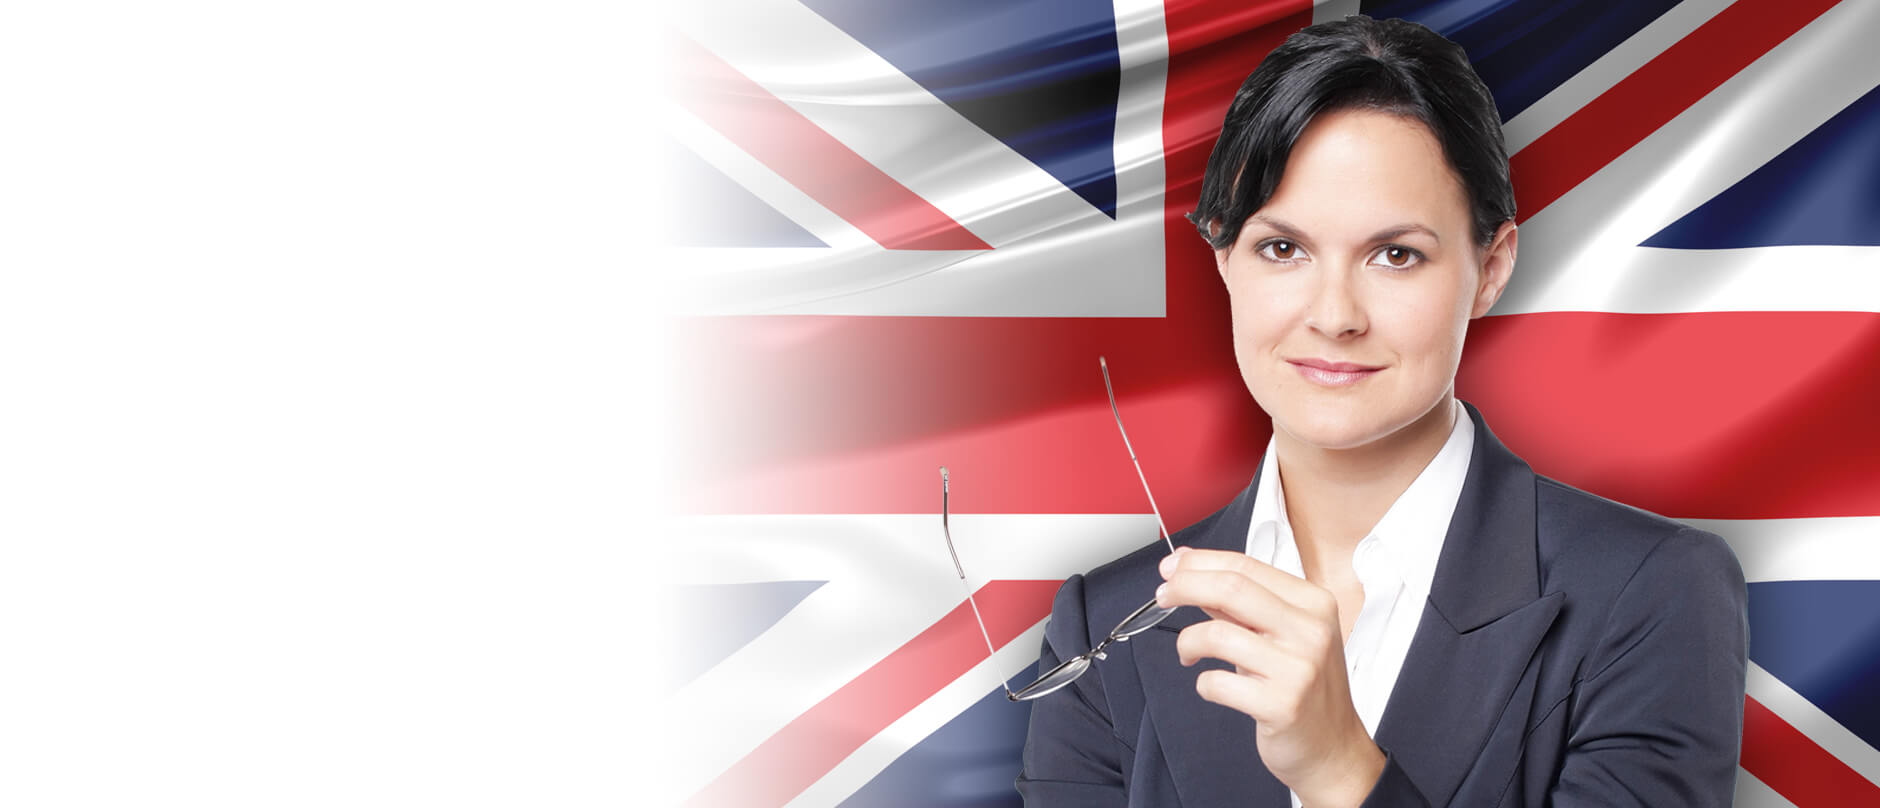 Młoda w żakiecie kobieta uśmiecha się na tle flagi brytyjskiej